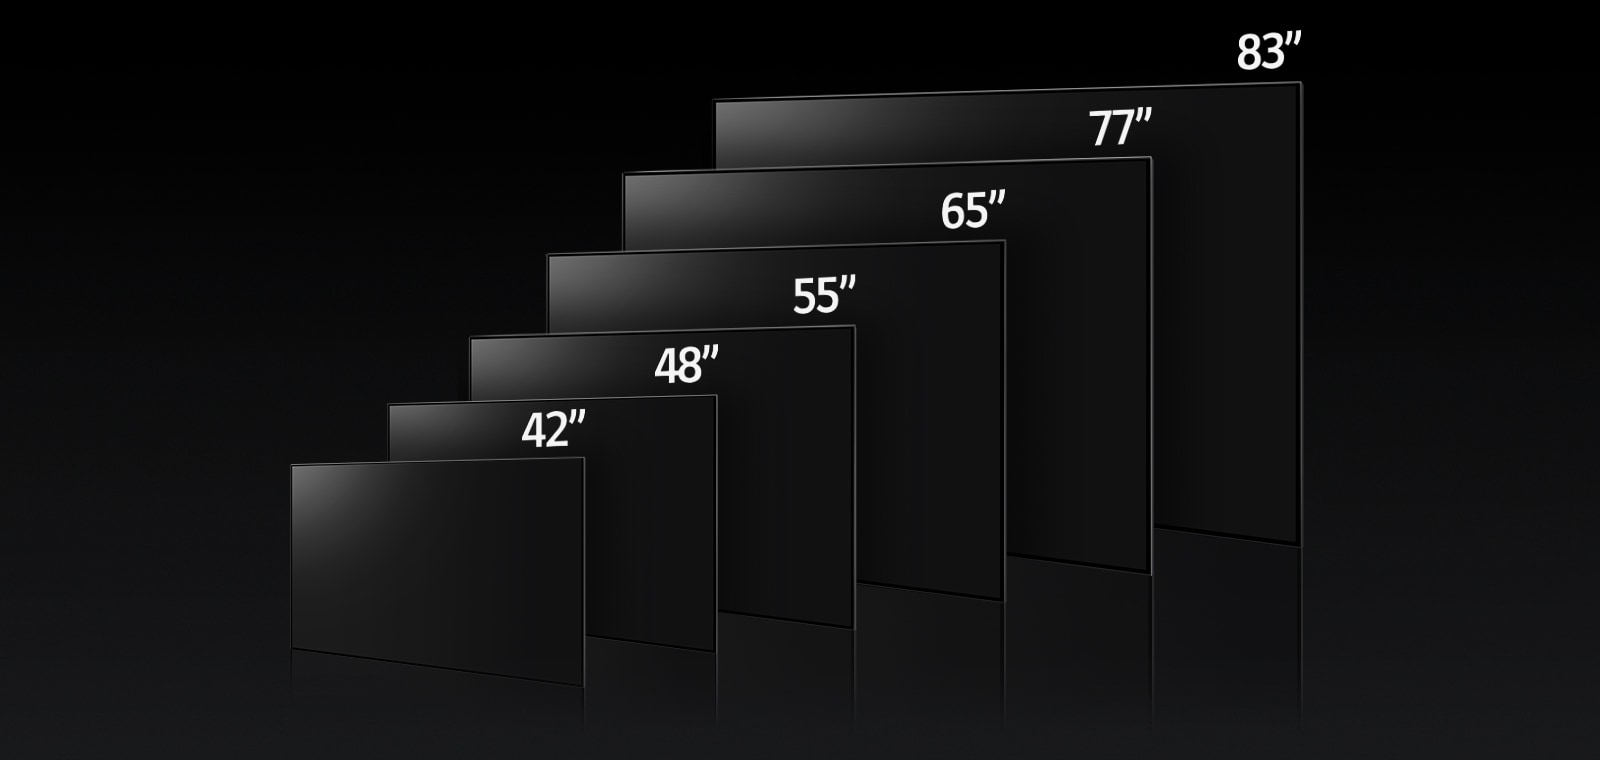 Slika na kojoj se uspoređuju različite veličine televizora LG OLED C3, prikazuju se 42", 48", 55", 65", 77" i 83".